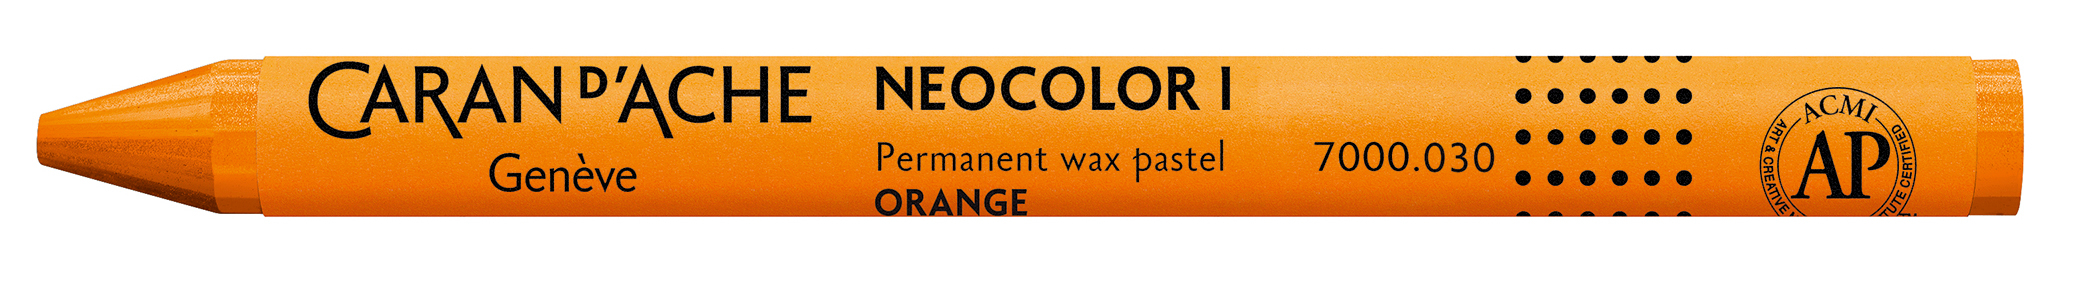 CARAN D'ACHE Crayons de cire Neocolor 1 7000.030 orange orange